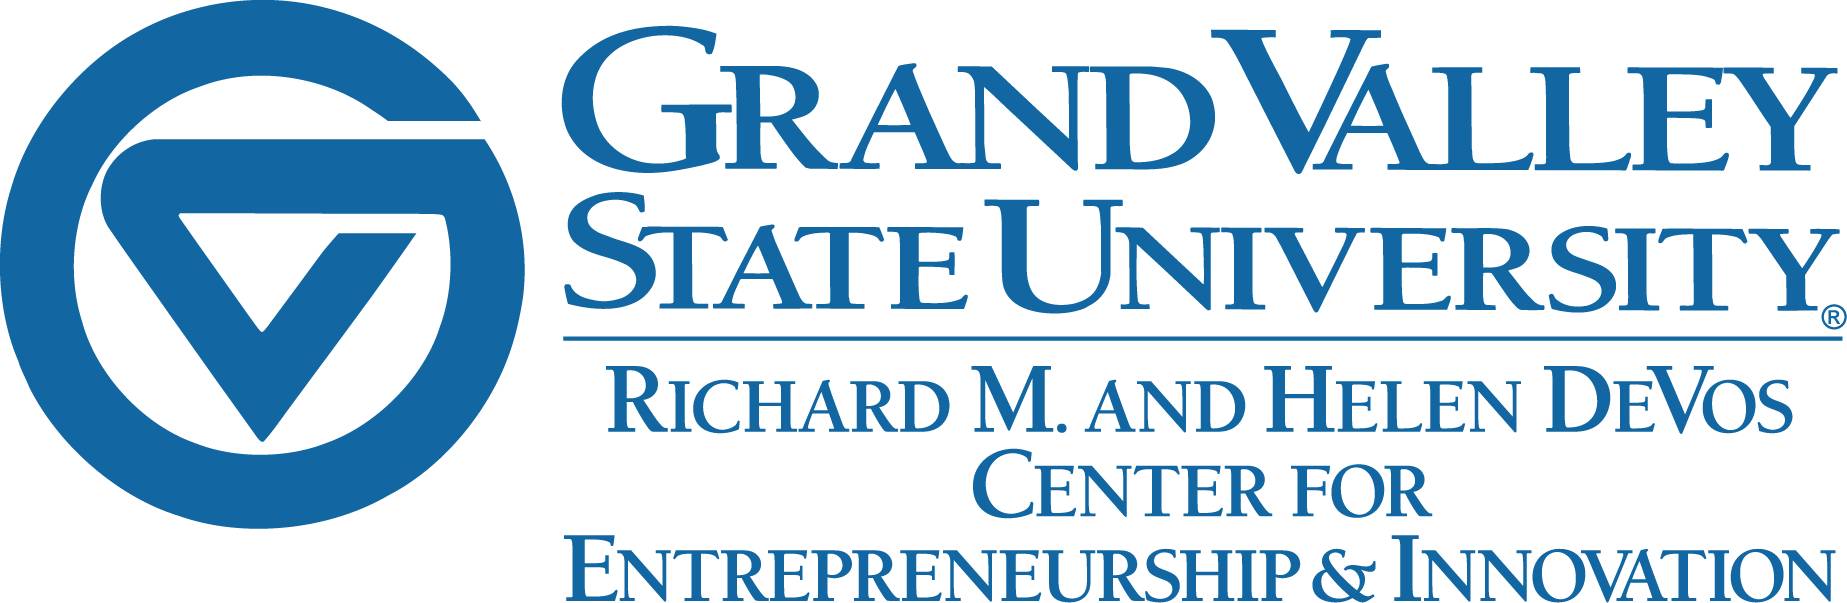 Richard M. and Helen DeVos Center for Entrepreneurship and Innovation Logo